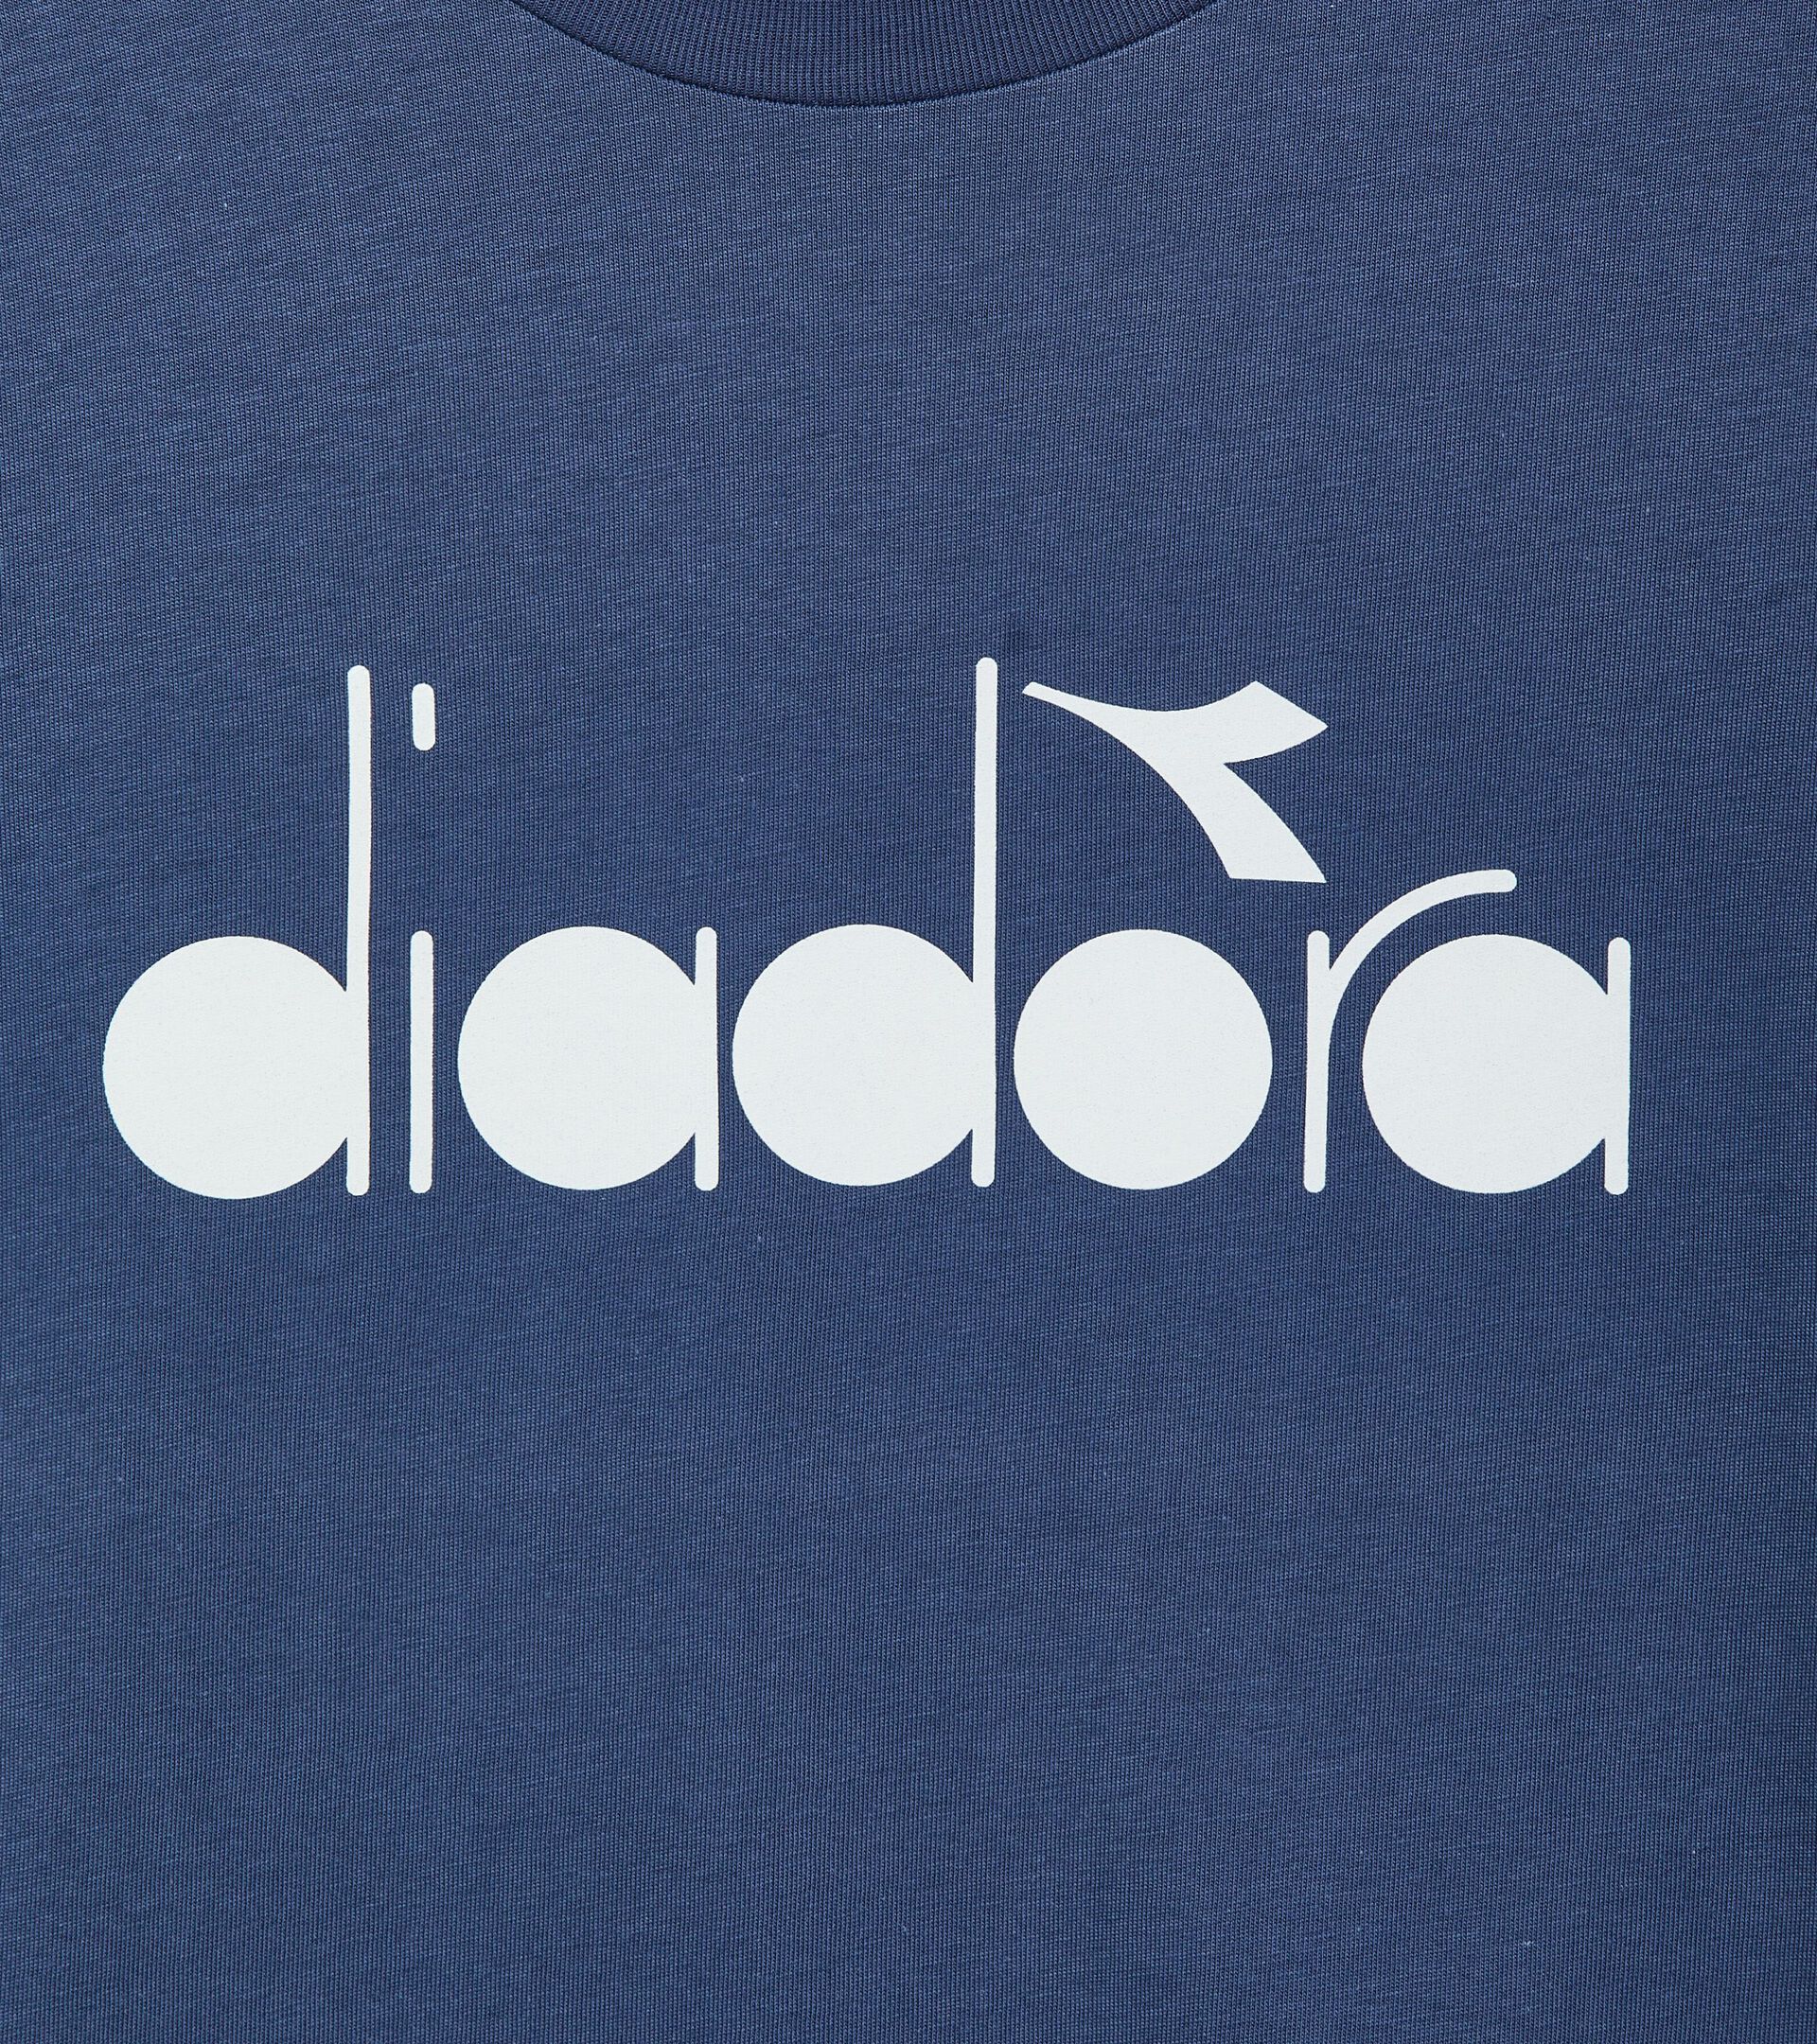 T-shirt - Made in Italy - Gender Neutral  T-SHIRT SS LOGO BLU OCEANA - Diadora